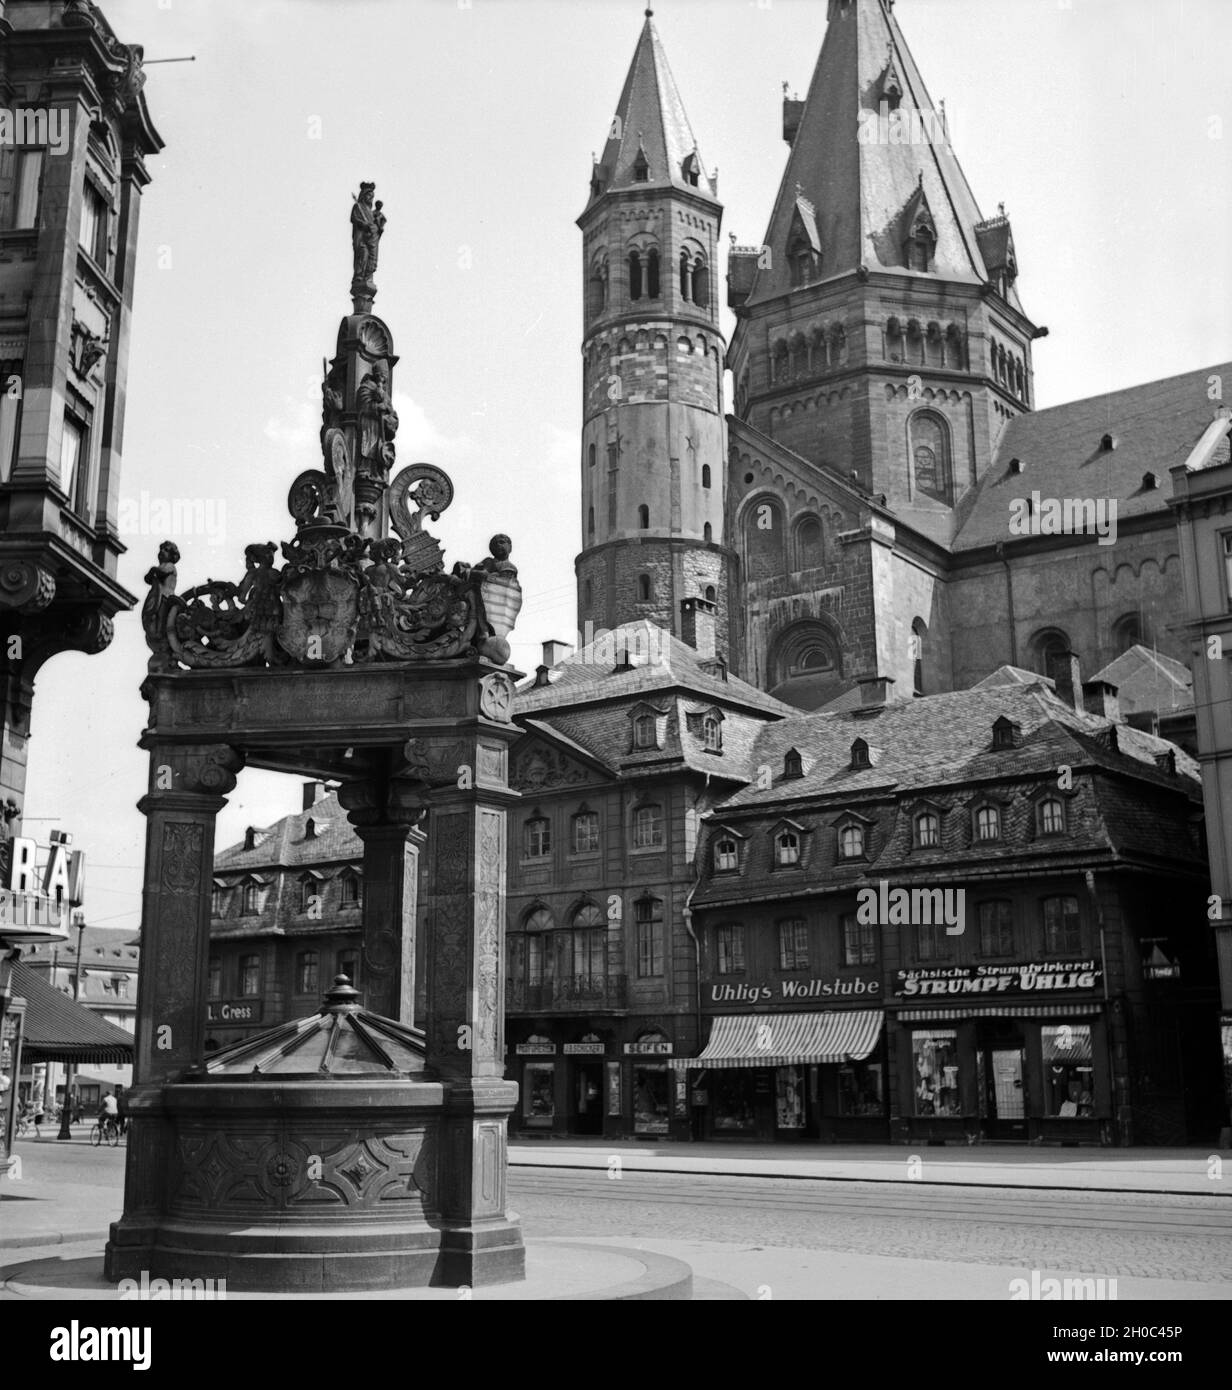 Der Hohe Dom zu Mainz mit Marktplatz, Marktbrunnen und Geschäften am Dom, Deutschland 1930er Jahre. Mainz cattedrale con il principale mercato, fontana e negozi, Germania 1930s. Foto Stock